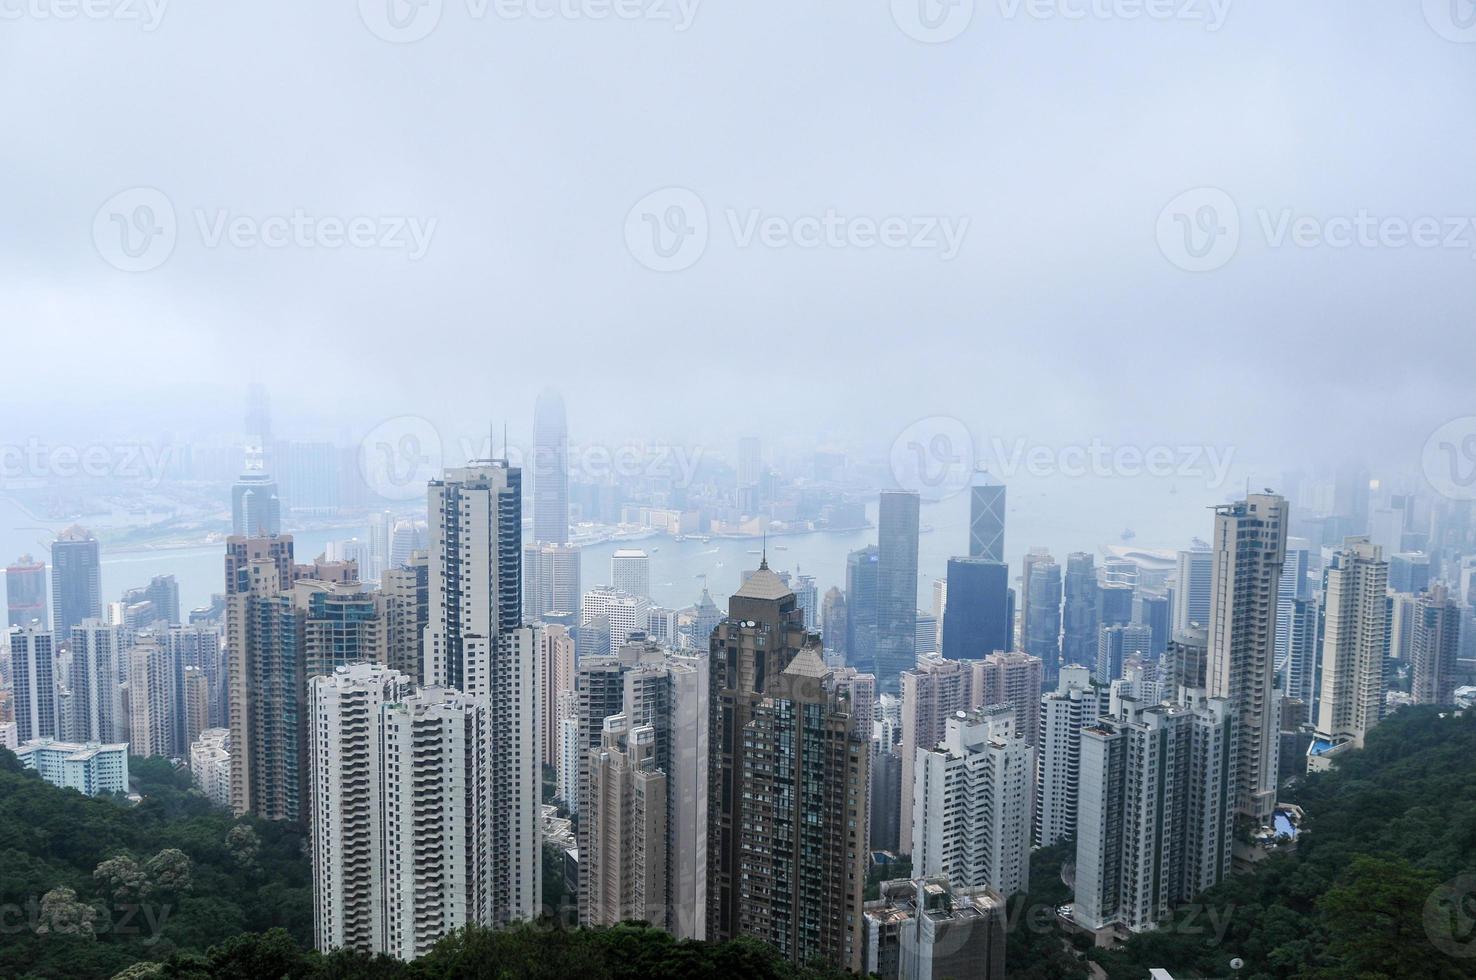 vista del pico victoria - hong kong foto